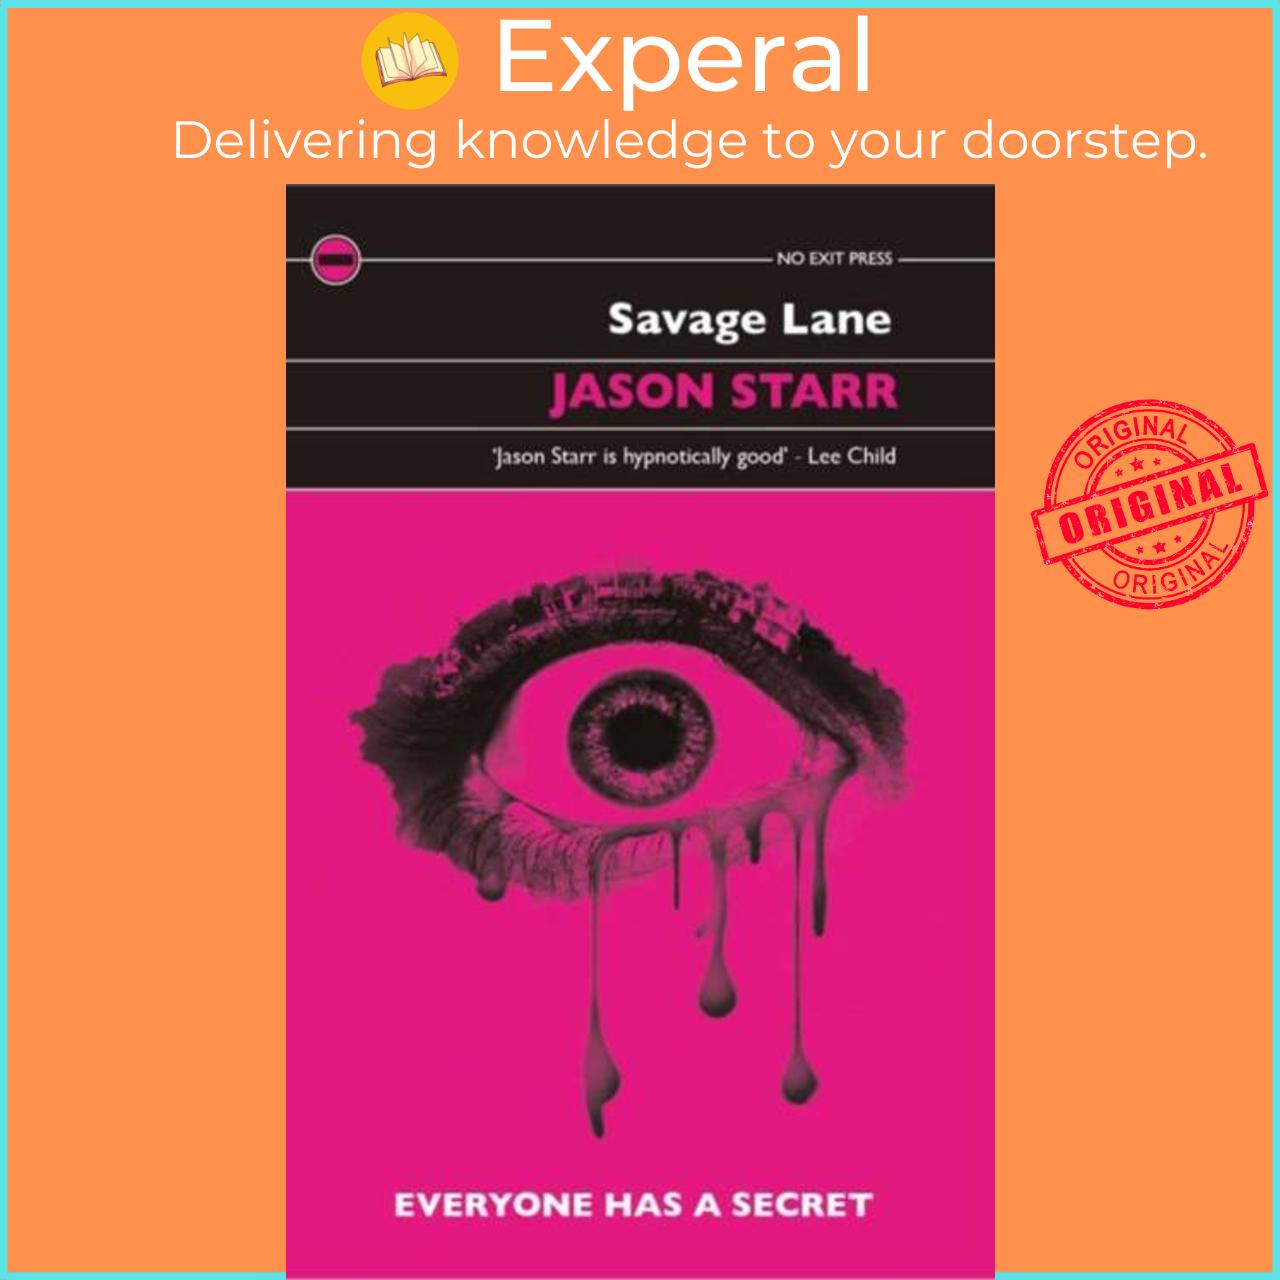 Sách - Savage Lane by Jason Starr (UK edition, paperback)